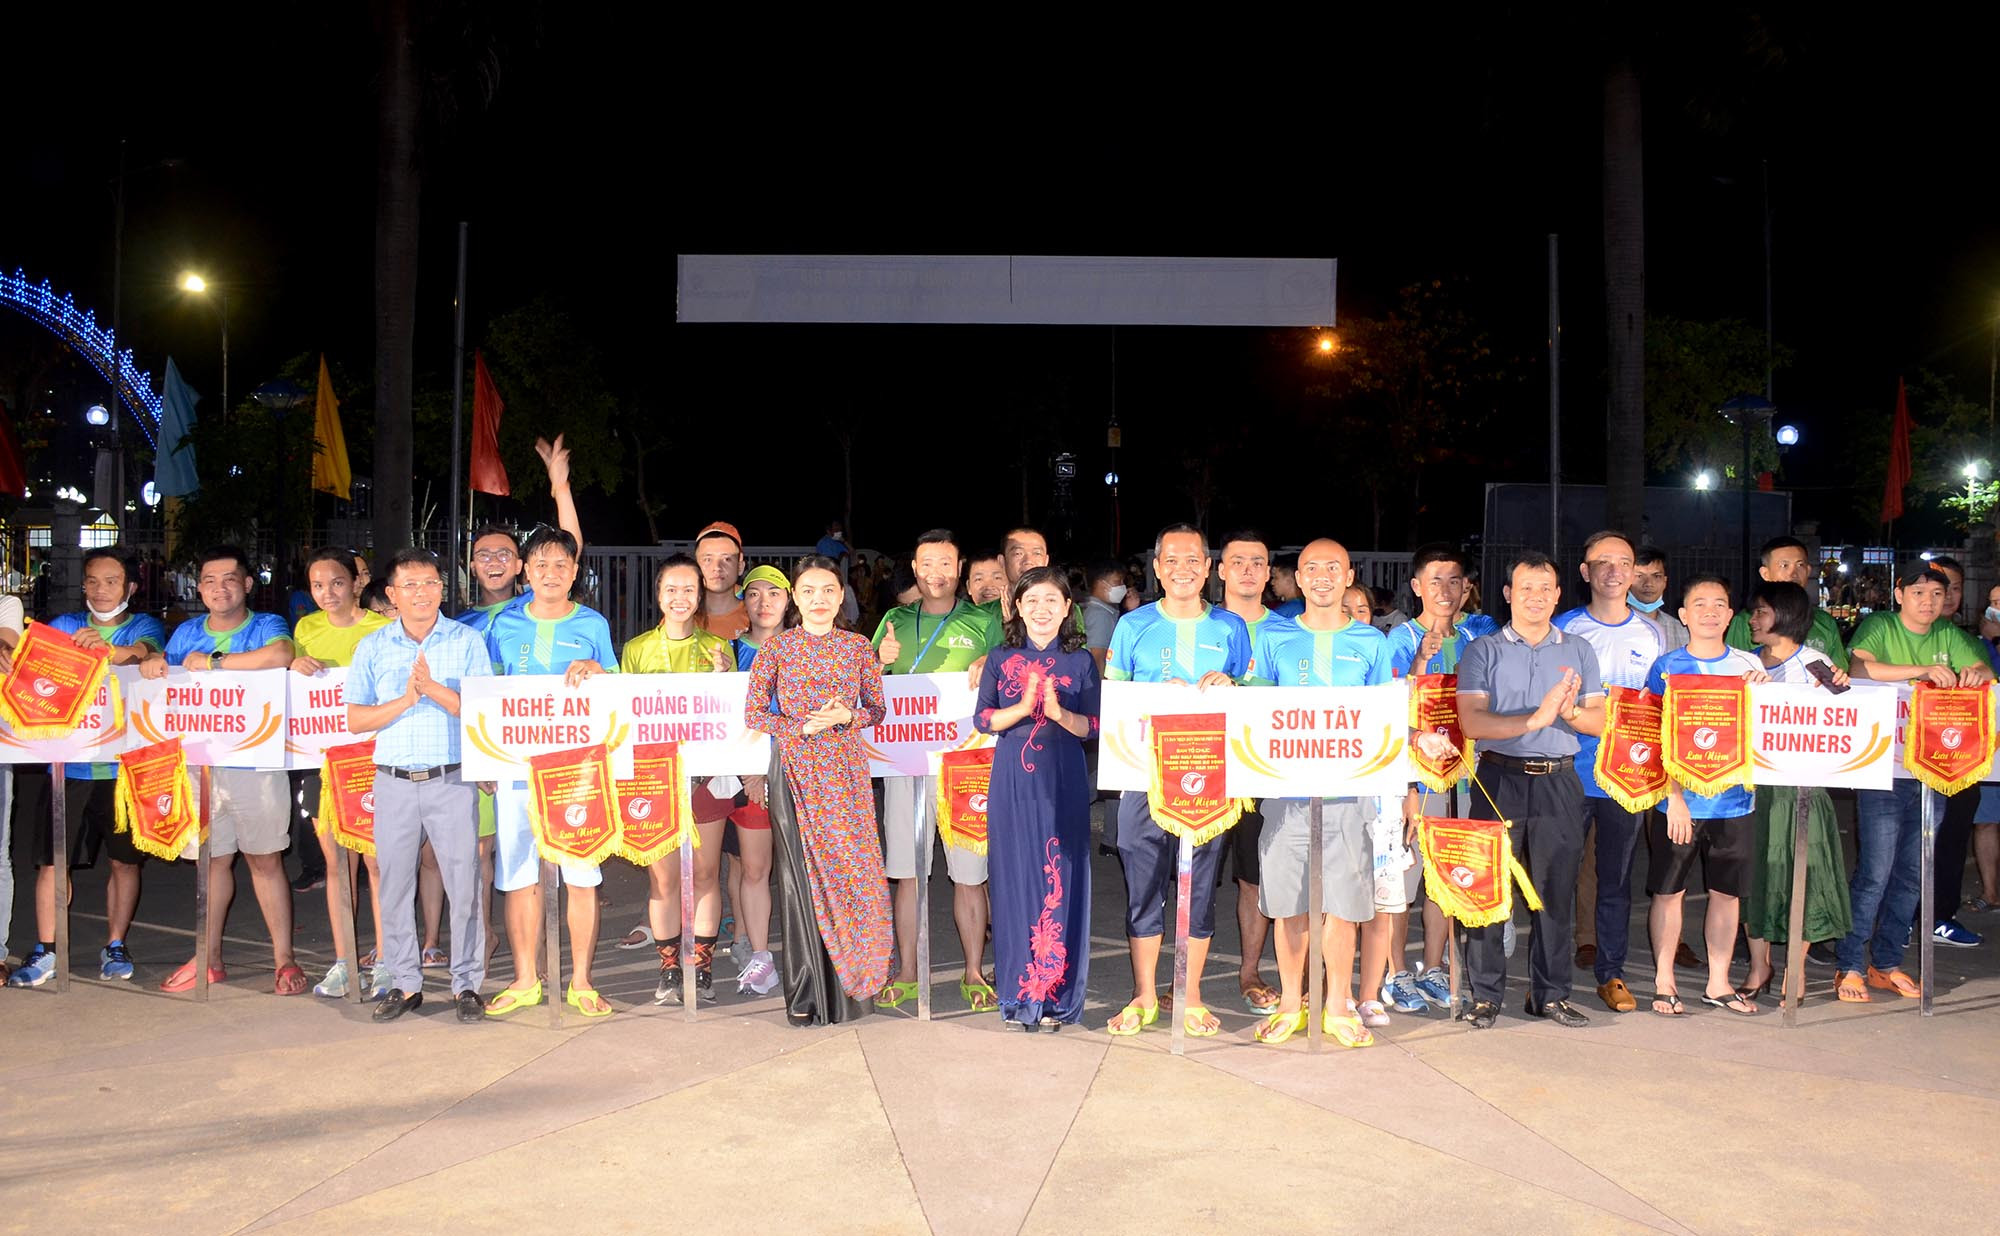 Lãnh đạo thành phố Vinh, Sở Văn hóa và Thể thao Nghệ An trao cờ lưu niệm cho 20 Câu lạc bộ về dự giải. Ảnh: Thành Chung